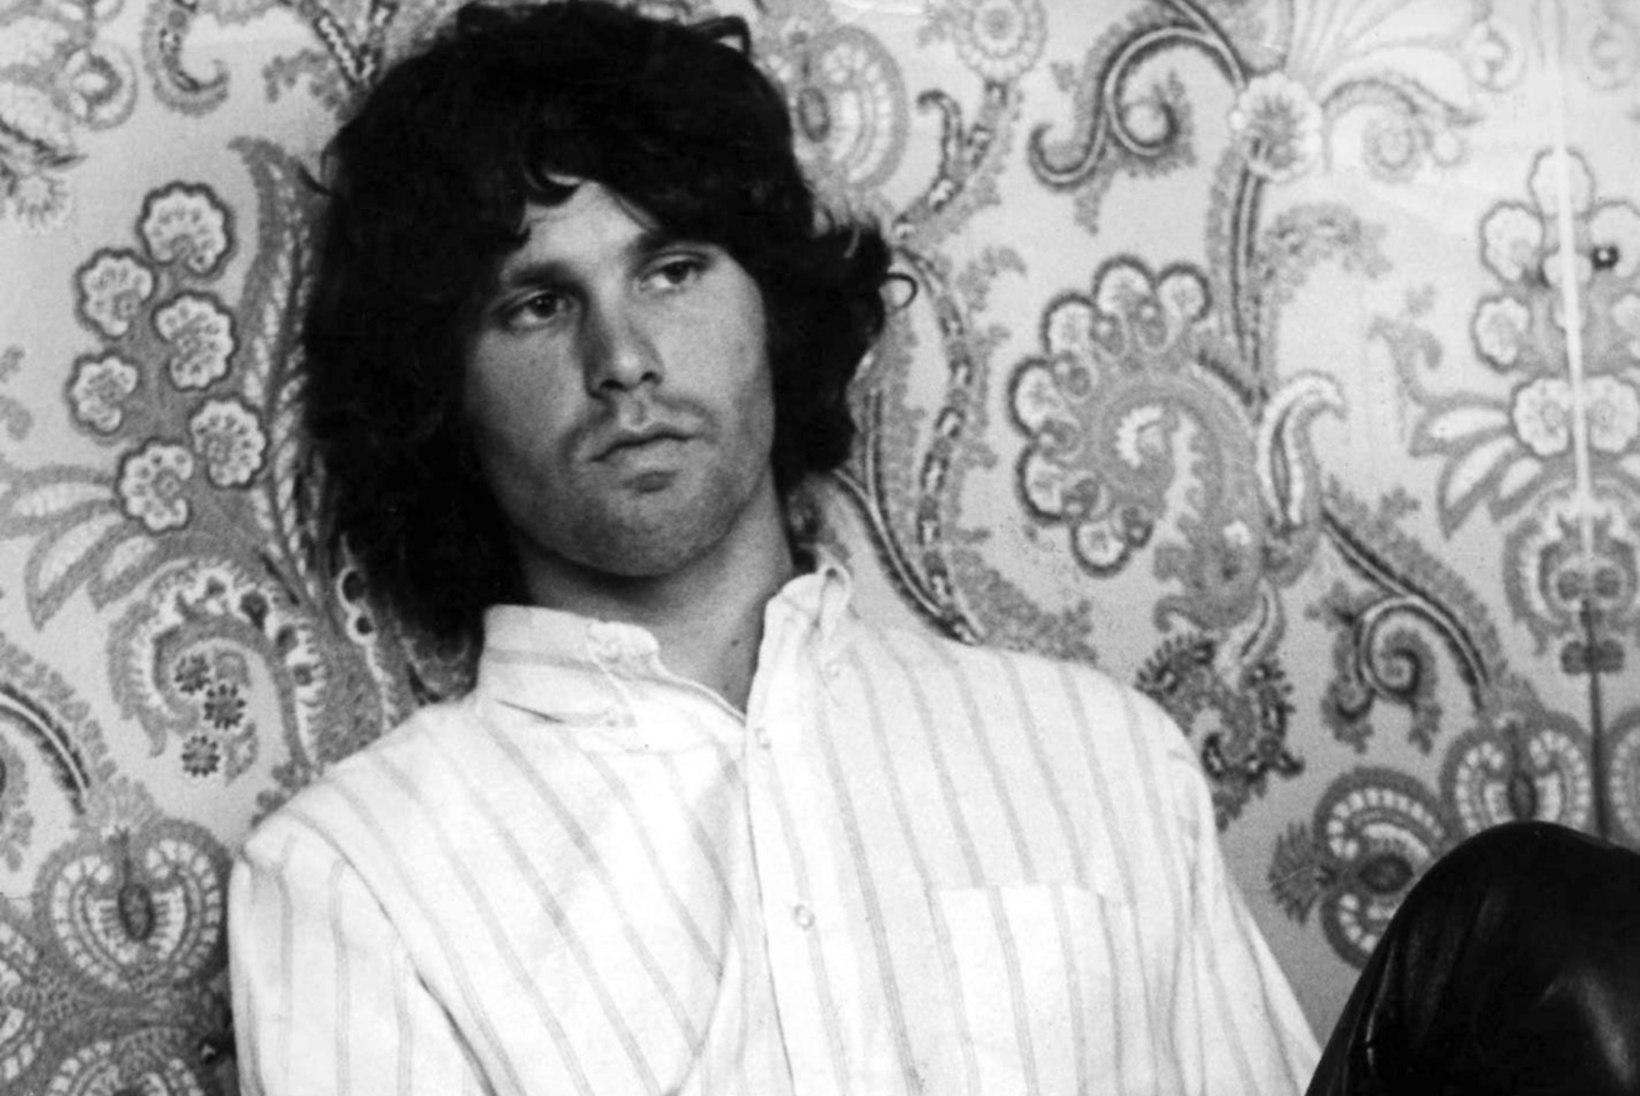  Kas Jim Morrisoni surm oli CIA kätetöö?